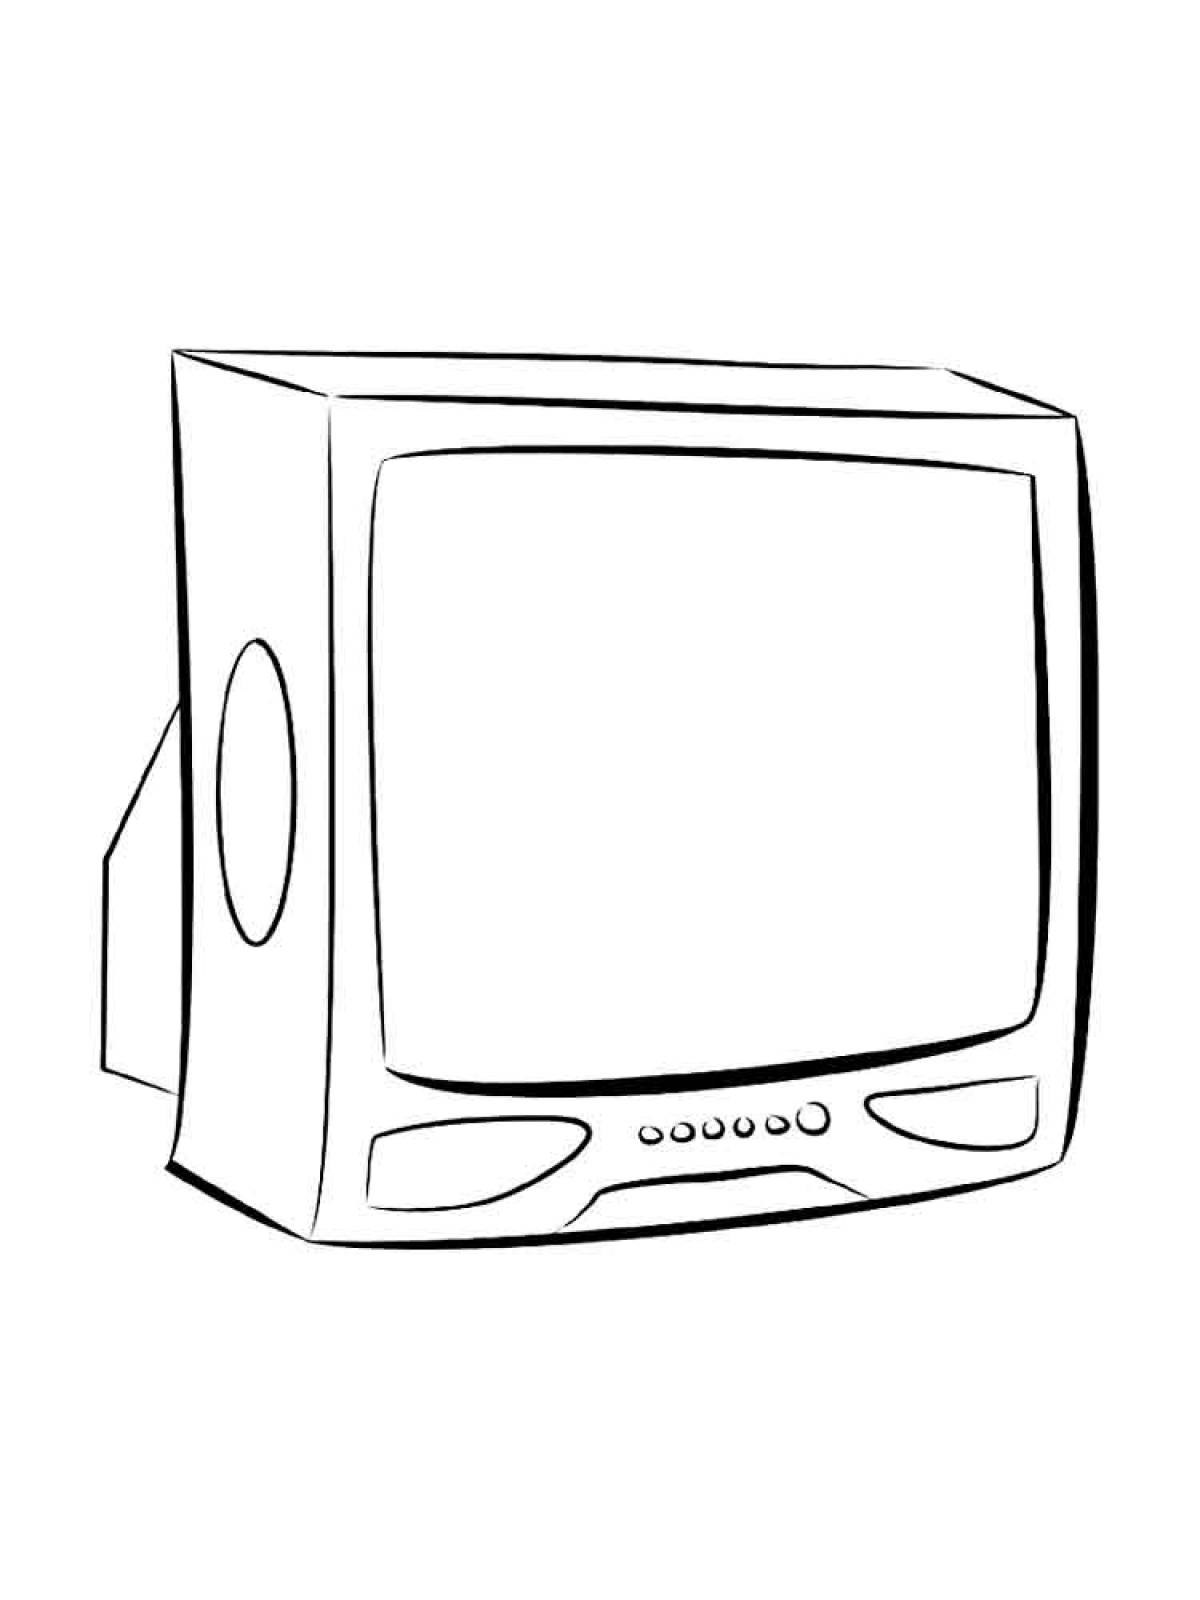 Figure TV